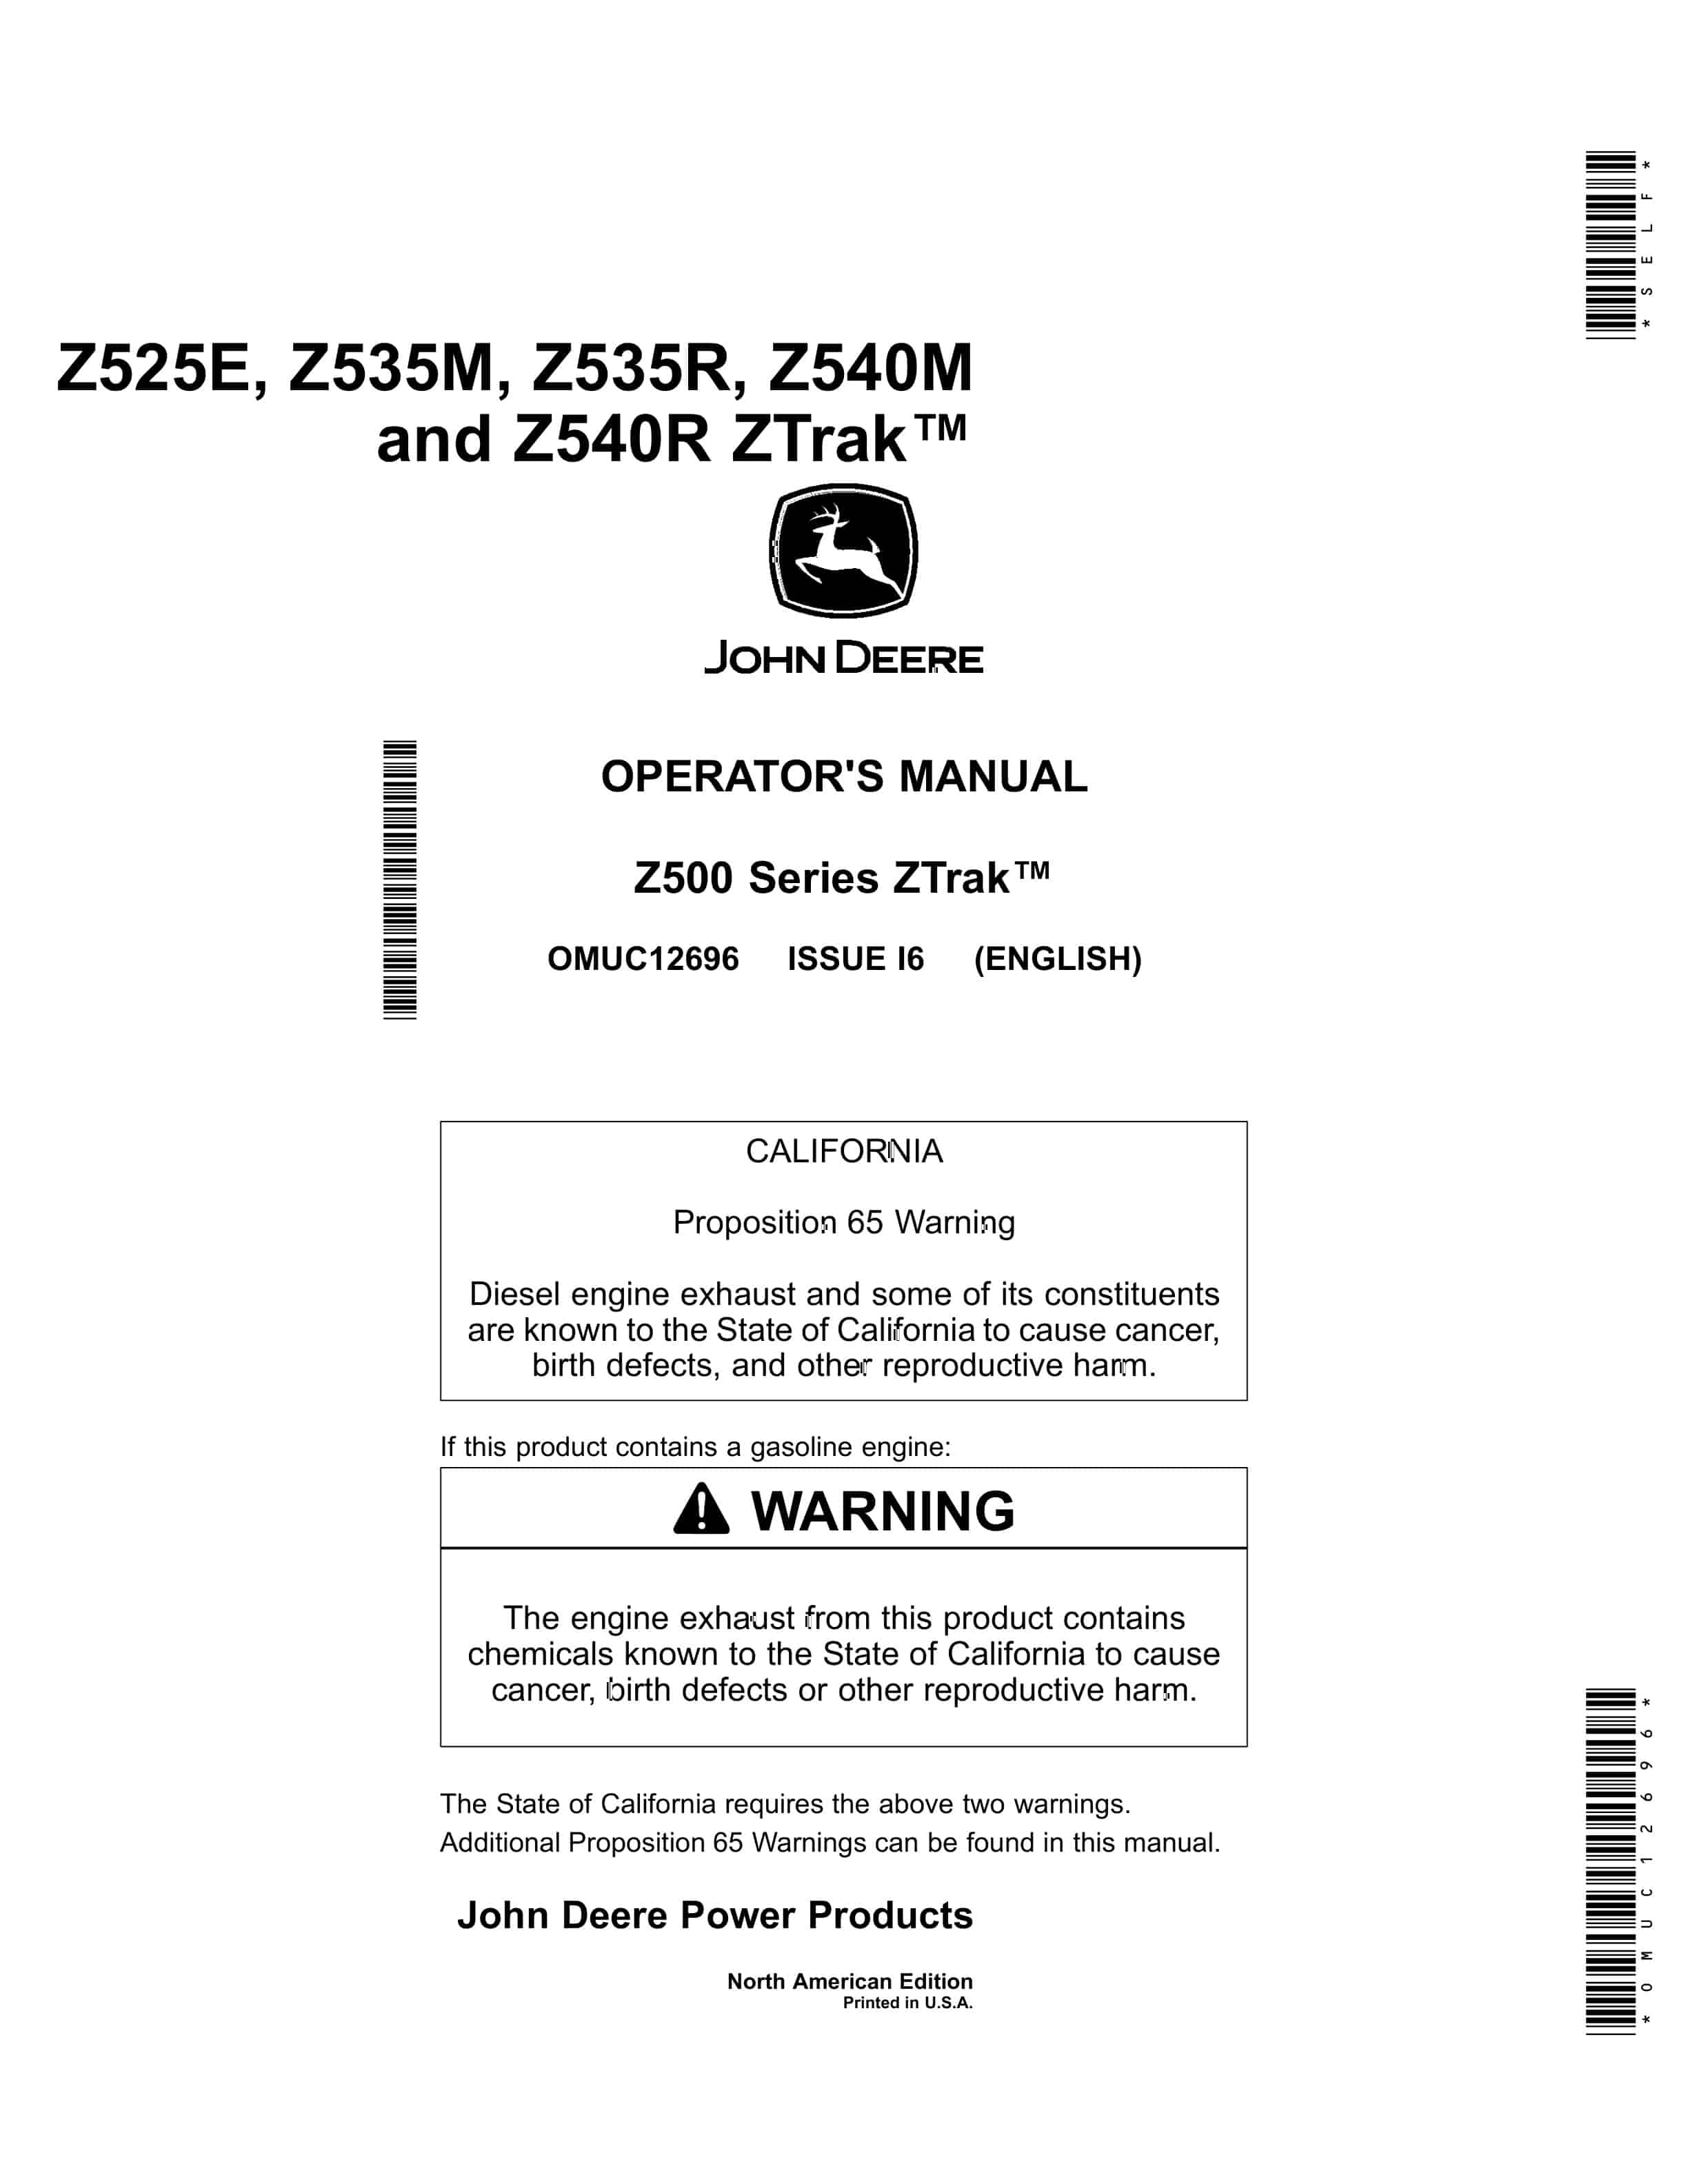 John Deere Z525E Z535M Z535R Z540M and Z540R ZTrak Operator Manual OMUC12696 1